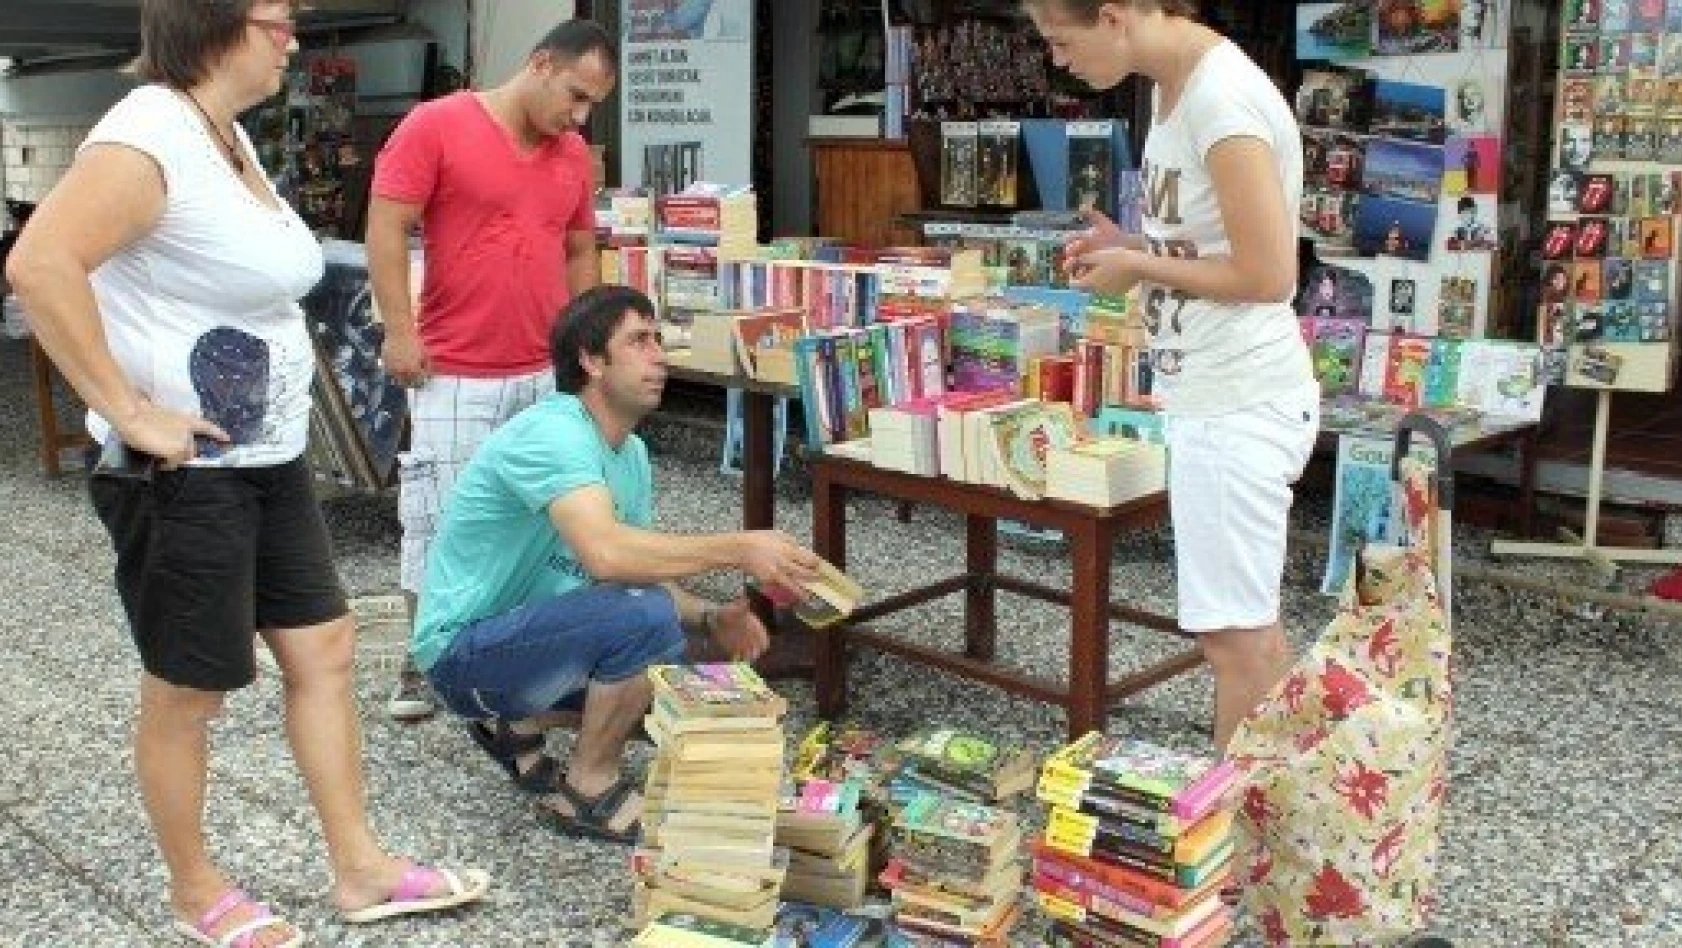 Yerleşik Ruslar, okudukları kitapları hediye ederek mutlu oluyor